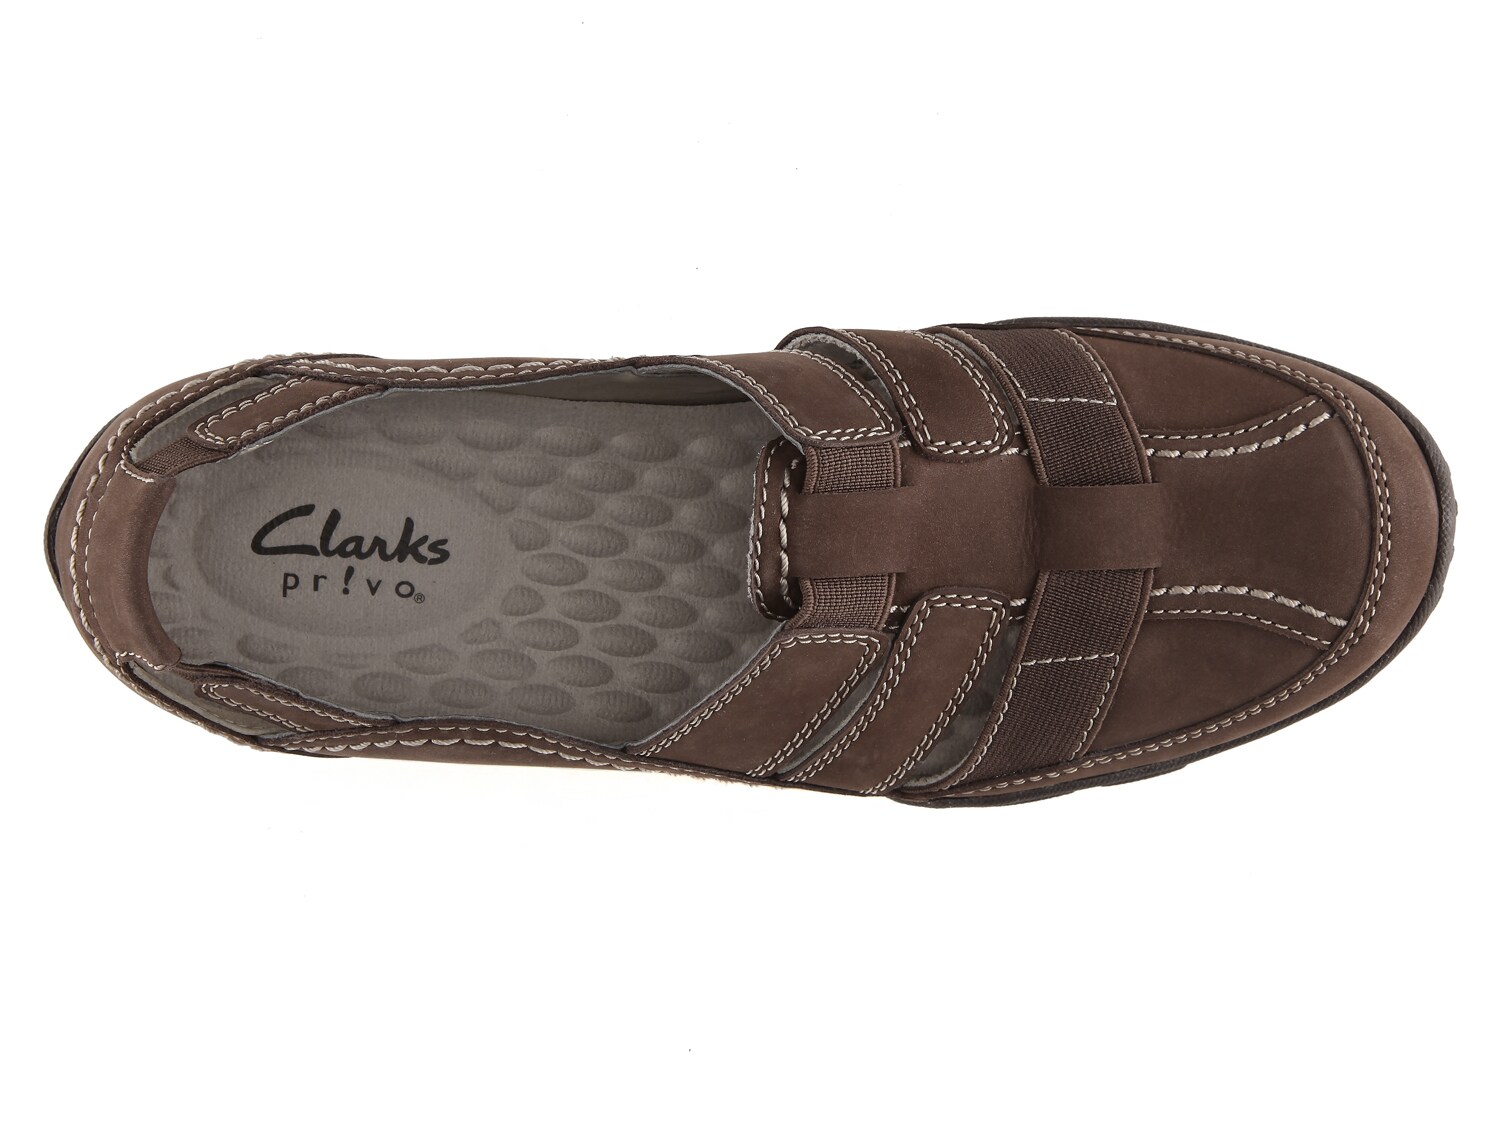 haley stork clarks shoes